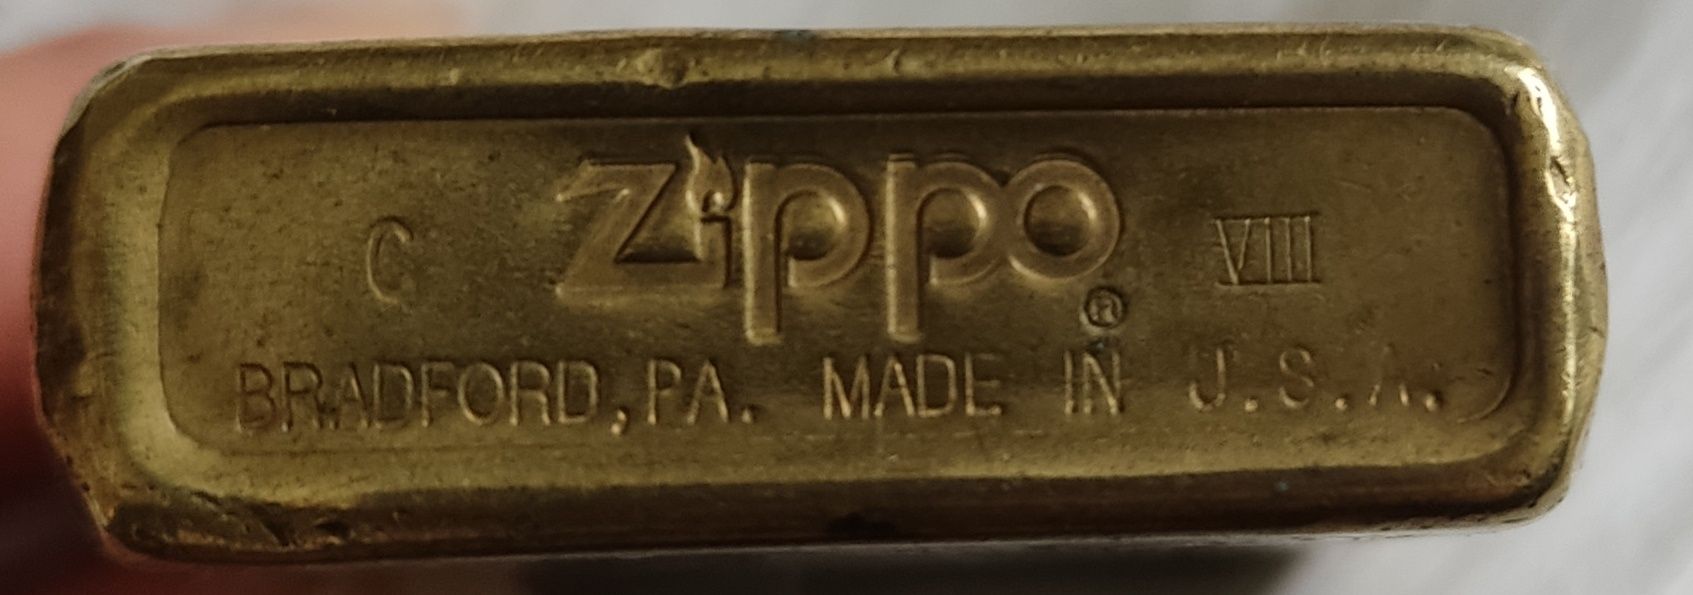 Isqueiros Zippo original